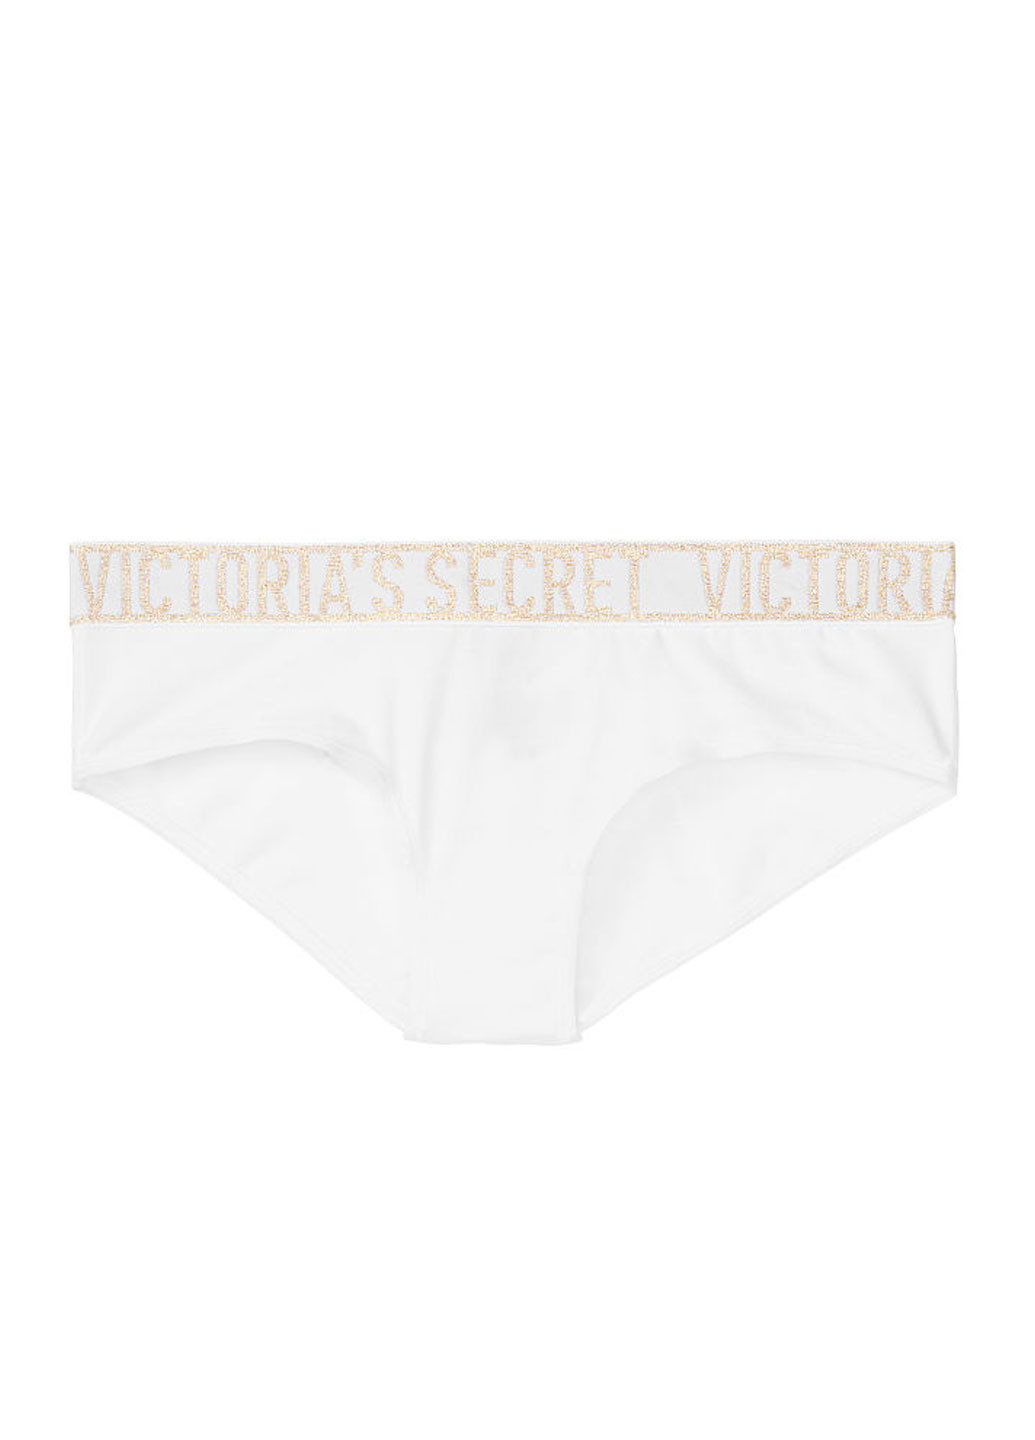 Трусики Victoria's Secret слип надписи белые повседневные